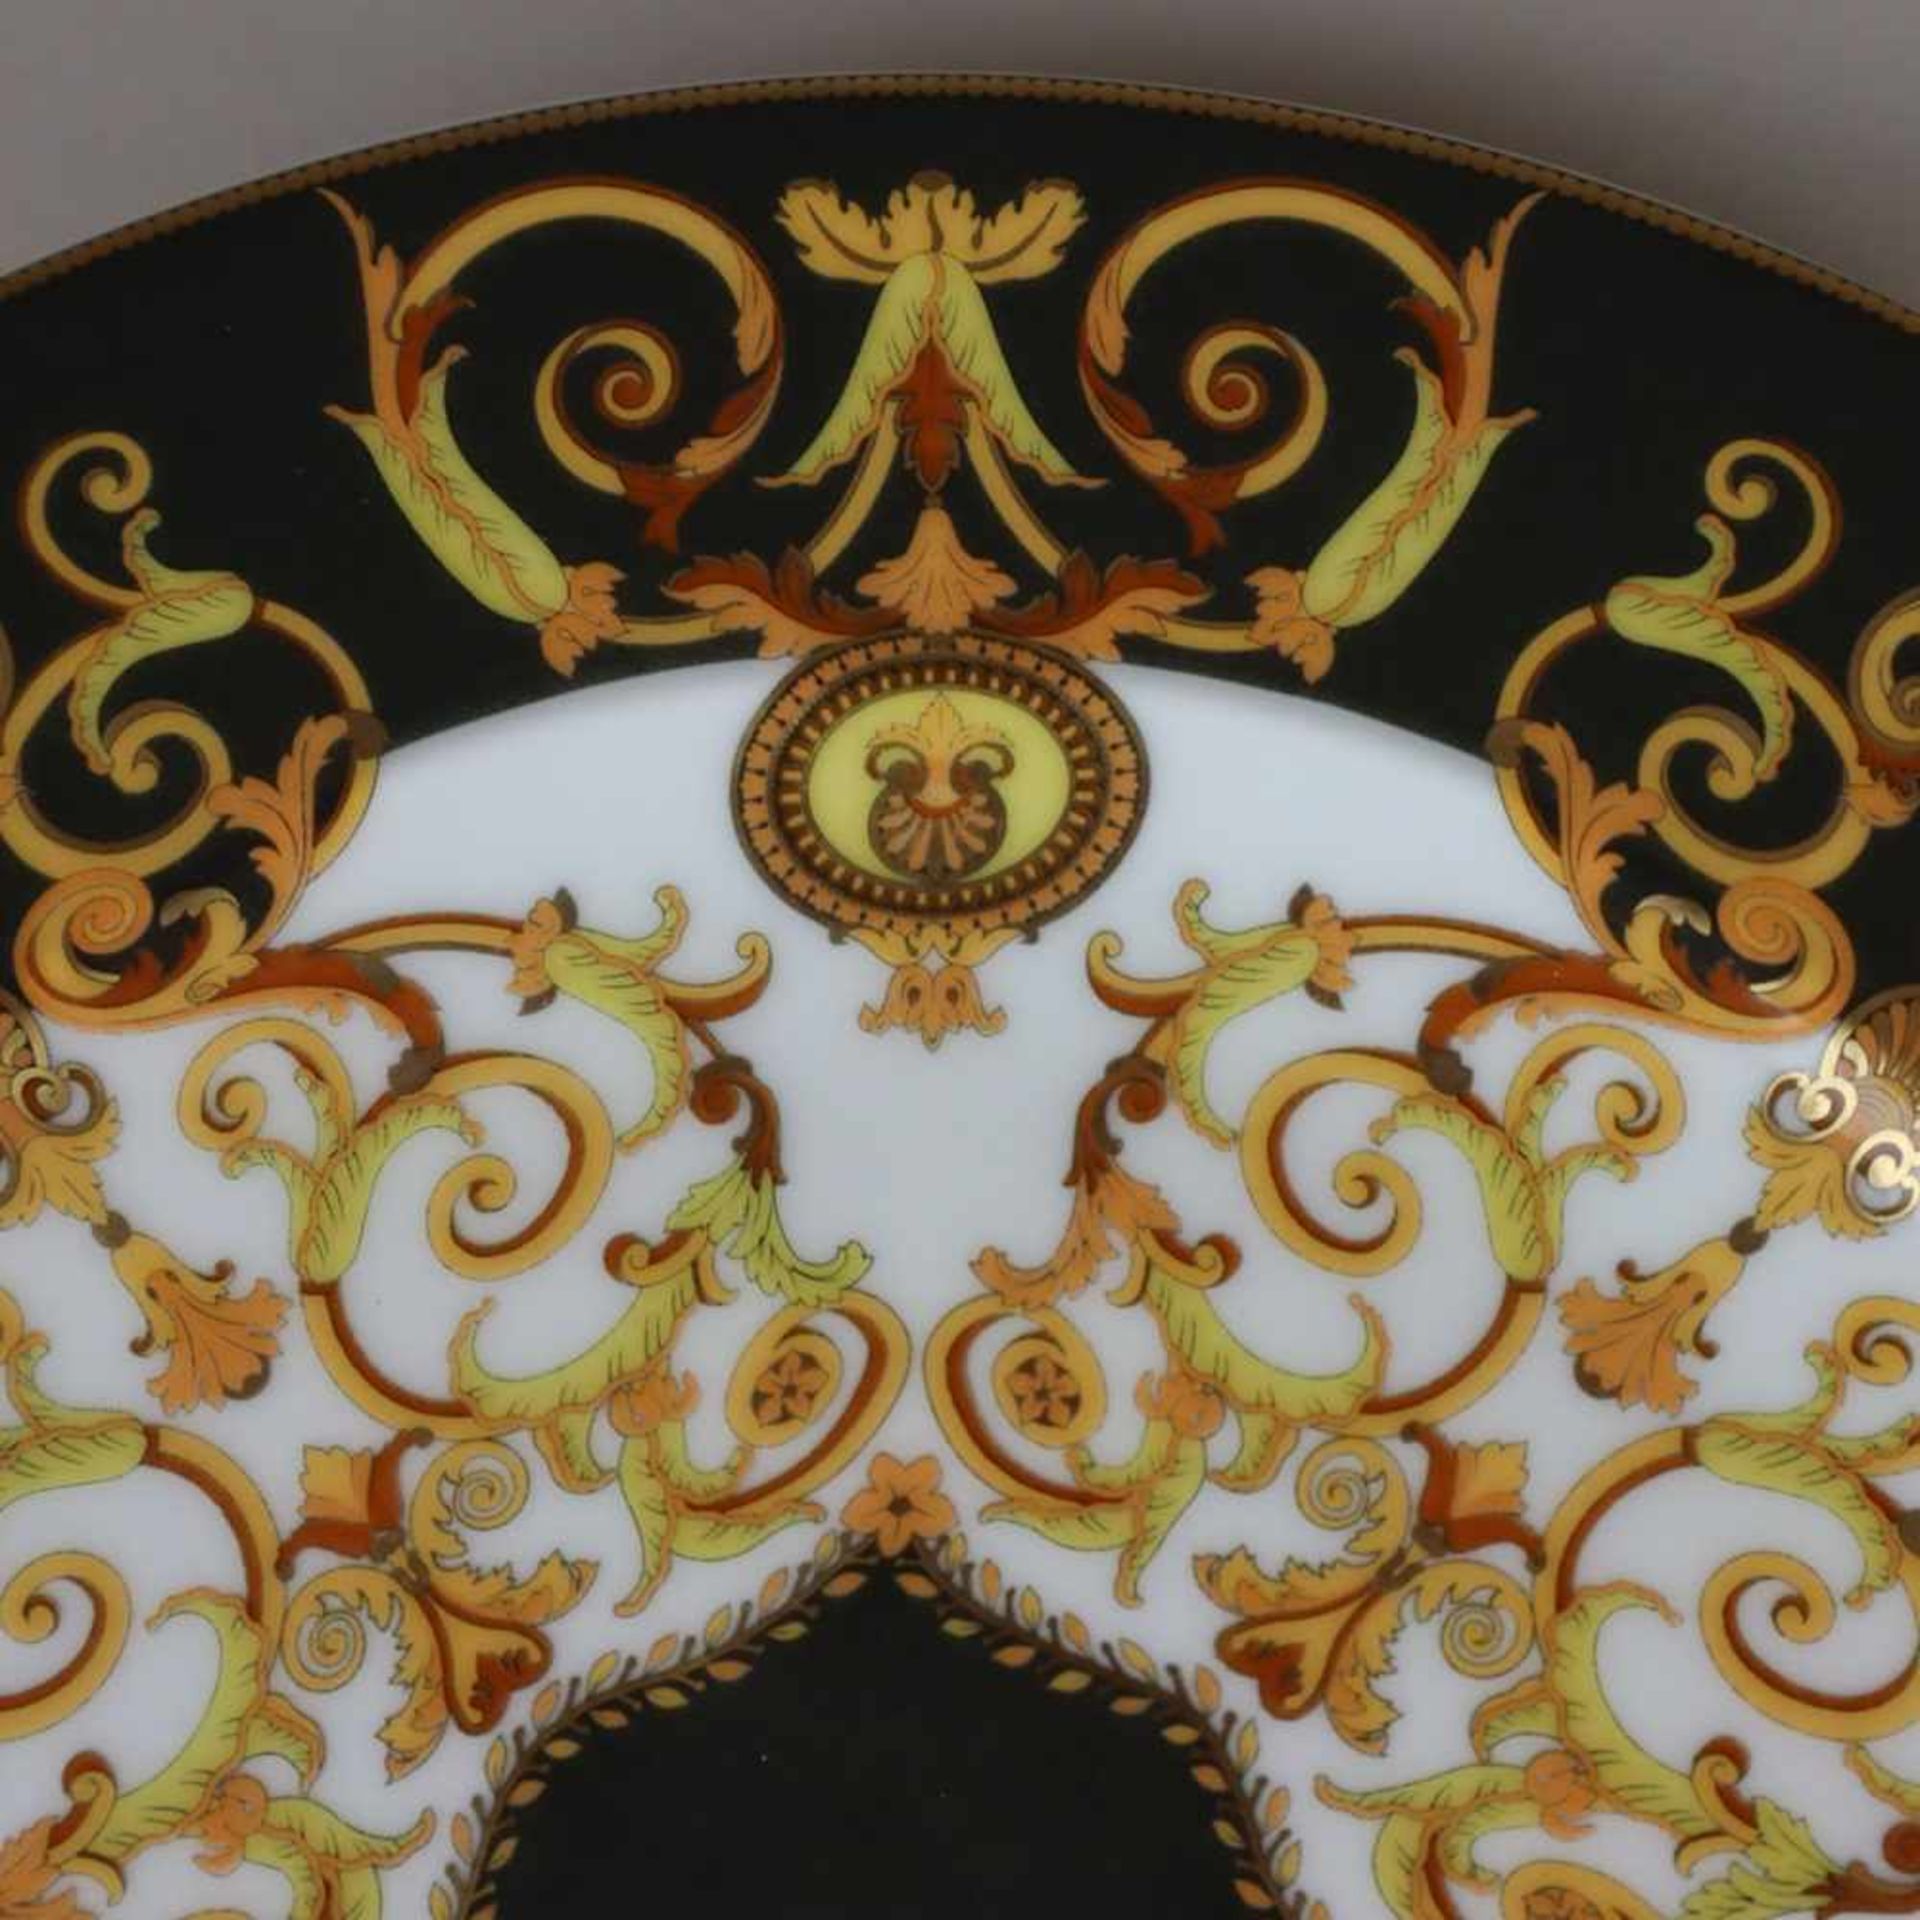 Zwei Teller "Versace Barocco" - Rosenthal, Entwurf Gianni Versace, runde Teller mit floralem - Bild 6 aus 9